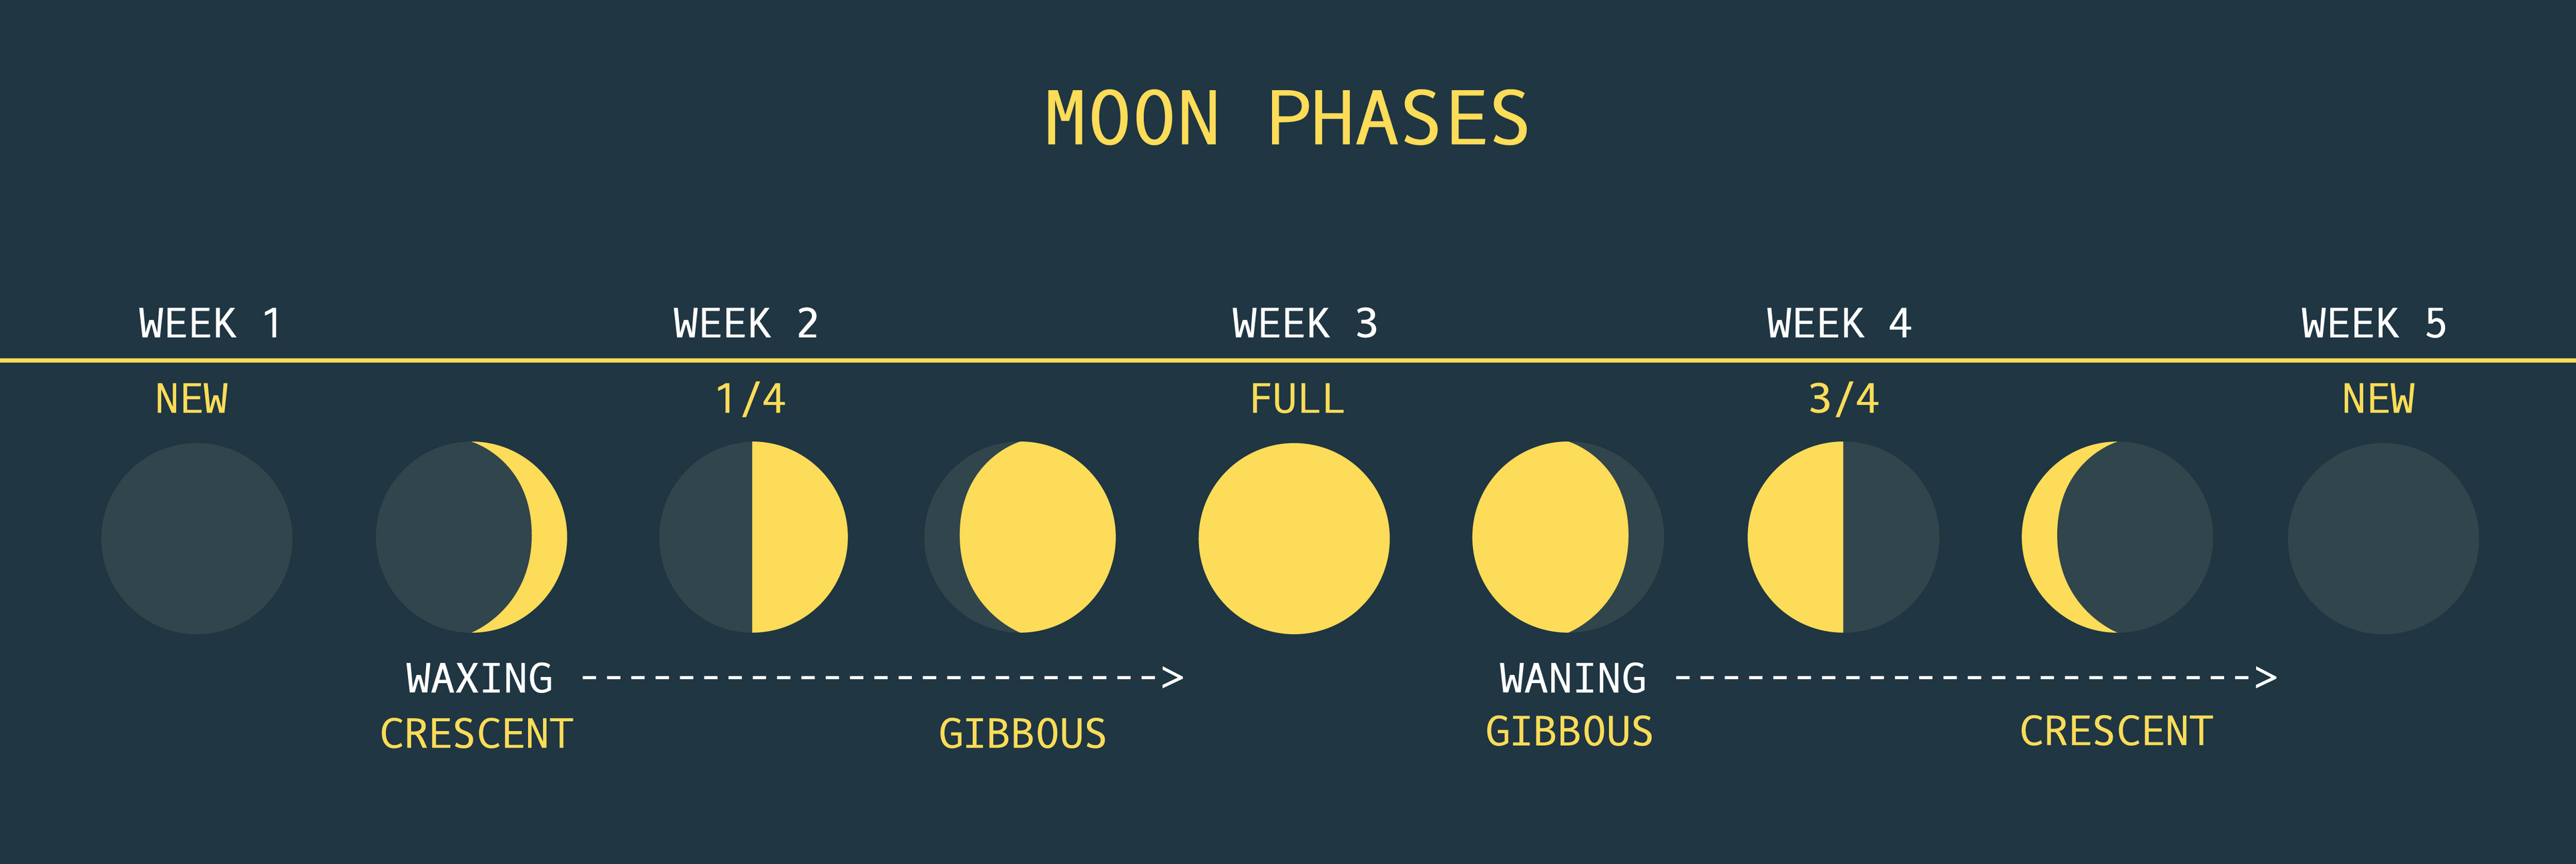 Похудение и фазы Луны